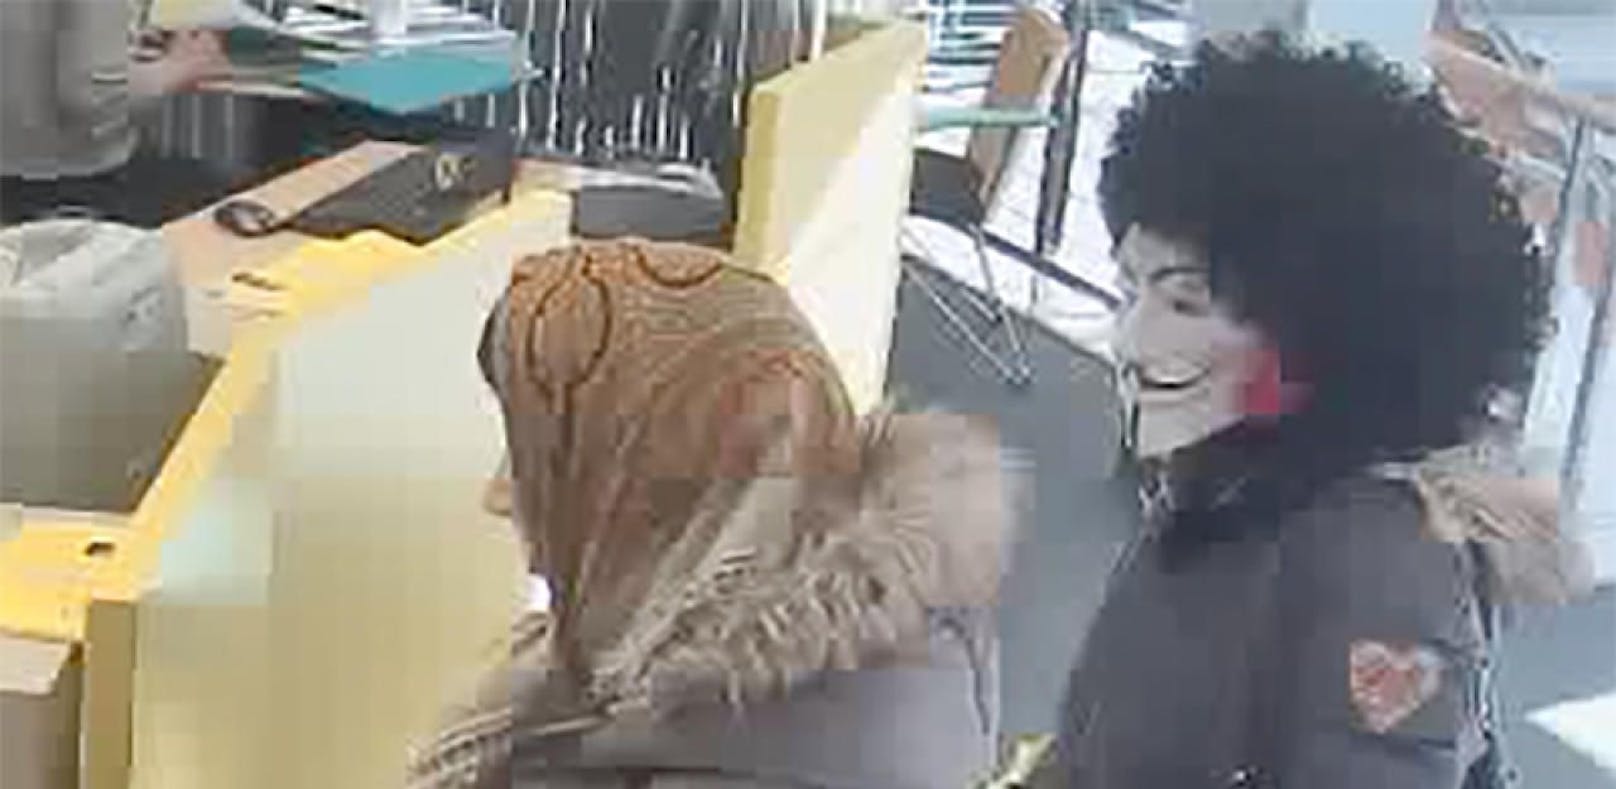 Am Unsinnigen Donnerstag im Februar forderten zwei maskierte Frauen in einer Bank Bargeld von den Angestellten.